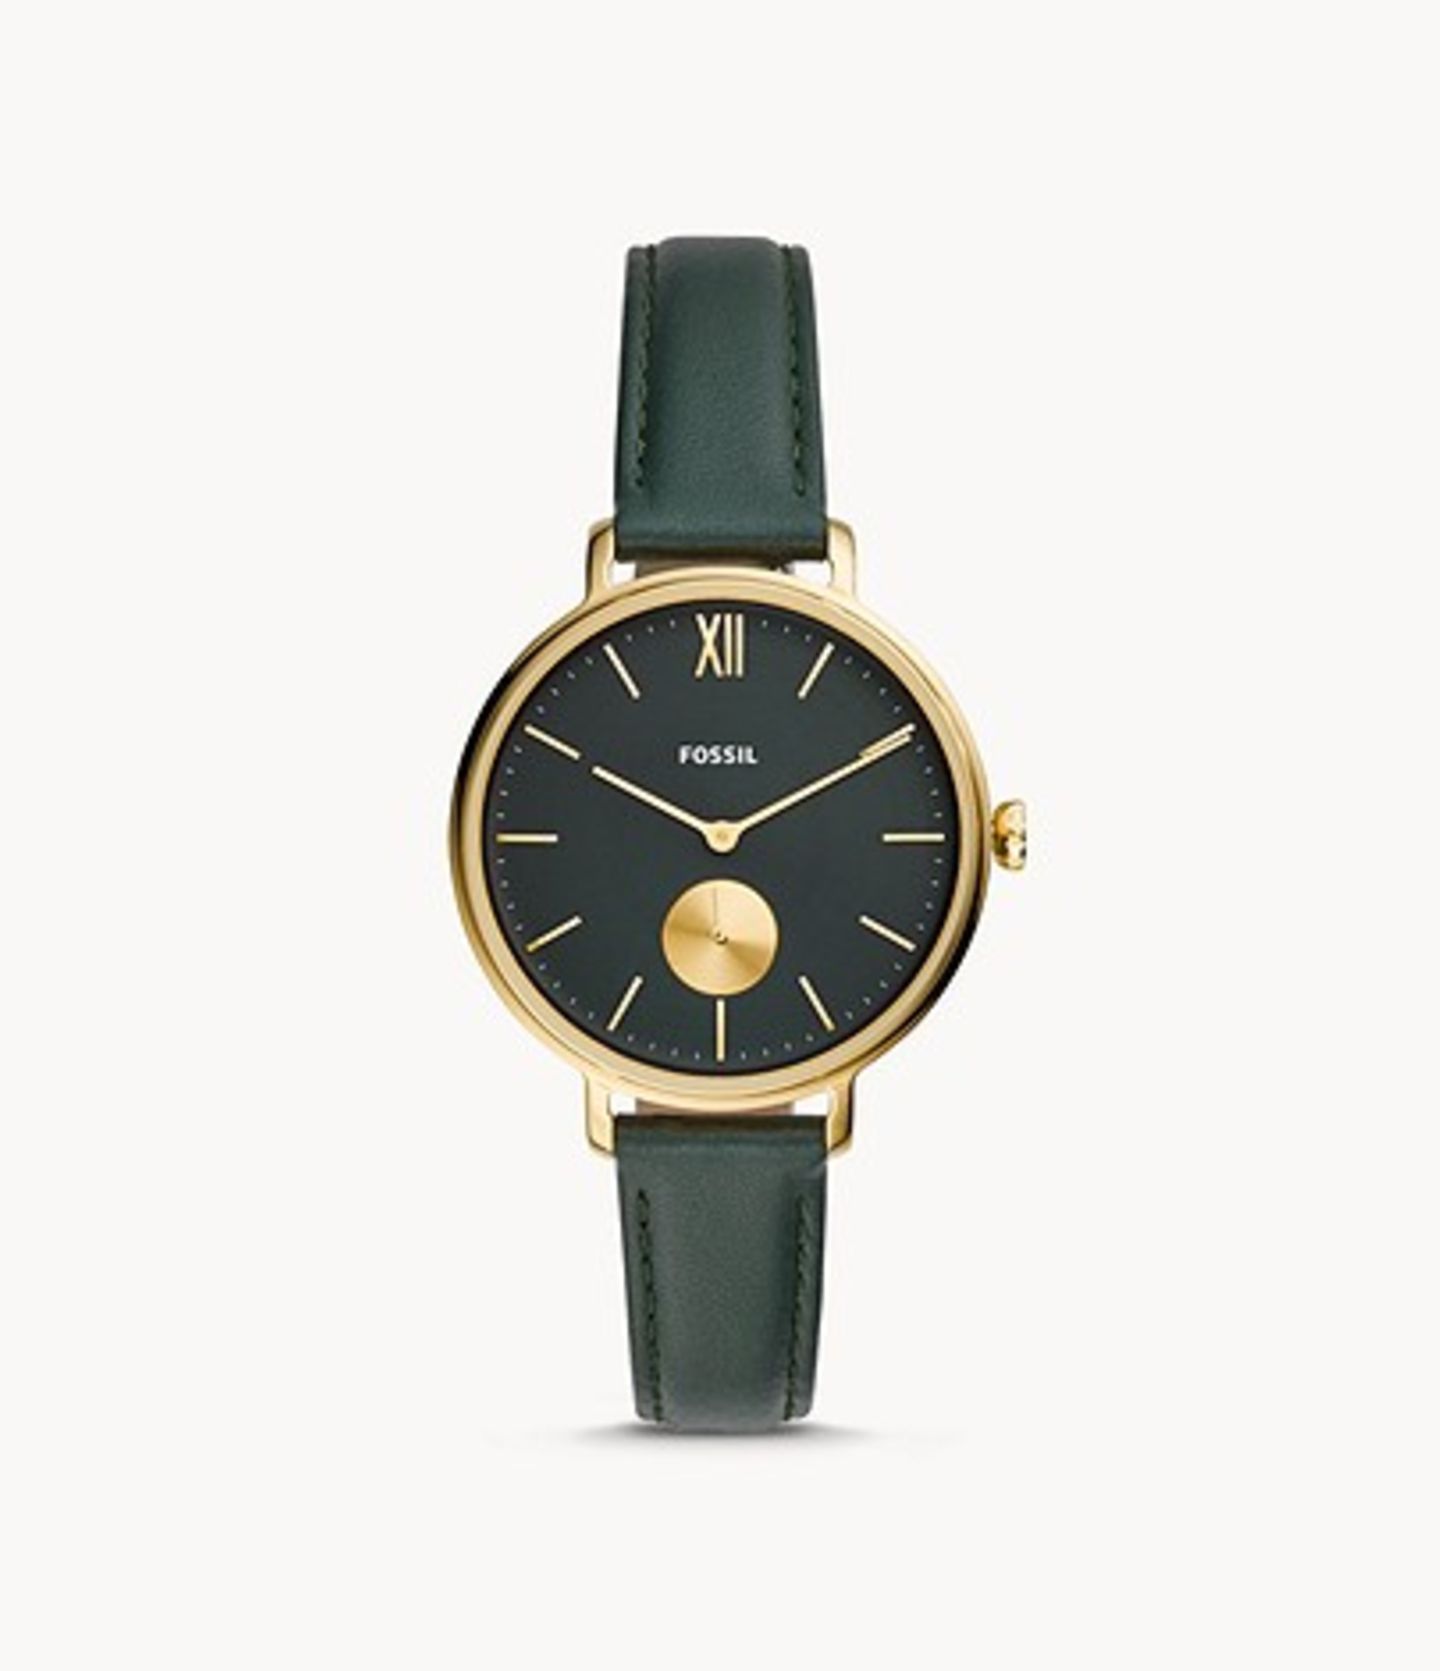 Lederband, goldfarbenes Gehäuse, schwarzes Ziffernblatt – diese Uhr ist nicht nur ultra elegant, sondern auch noch super trendy. Von Fossil, um 119 Euro.